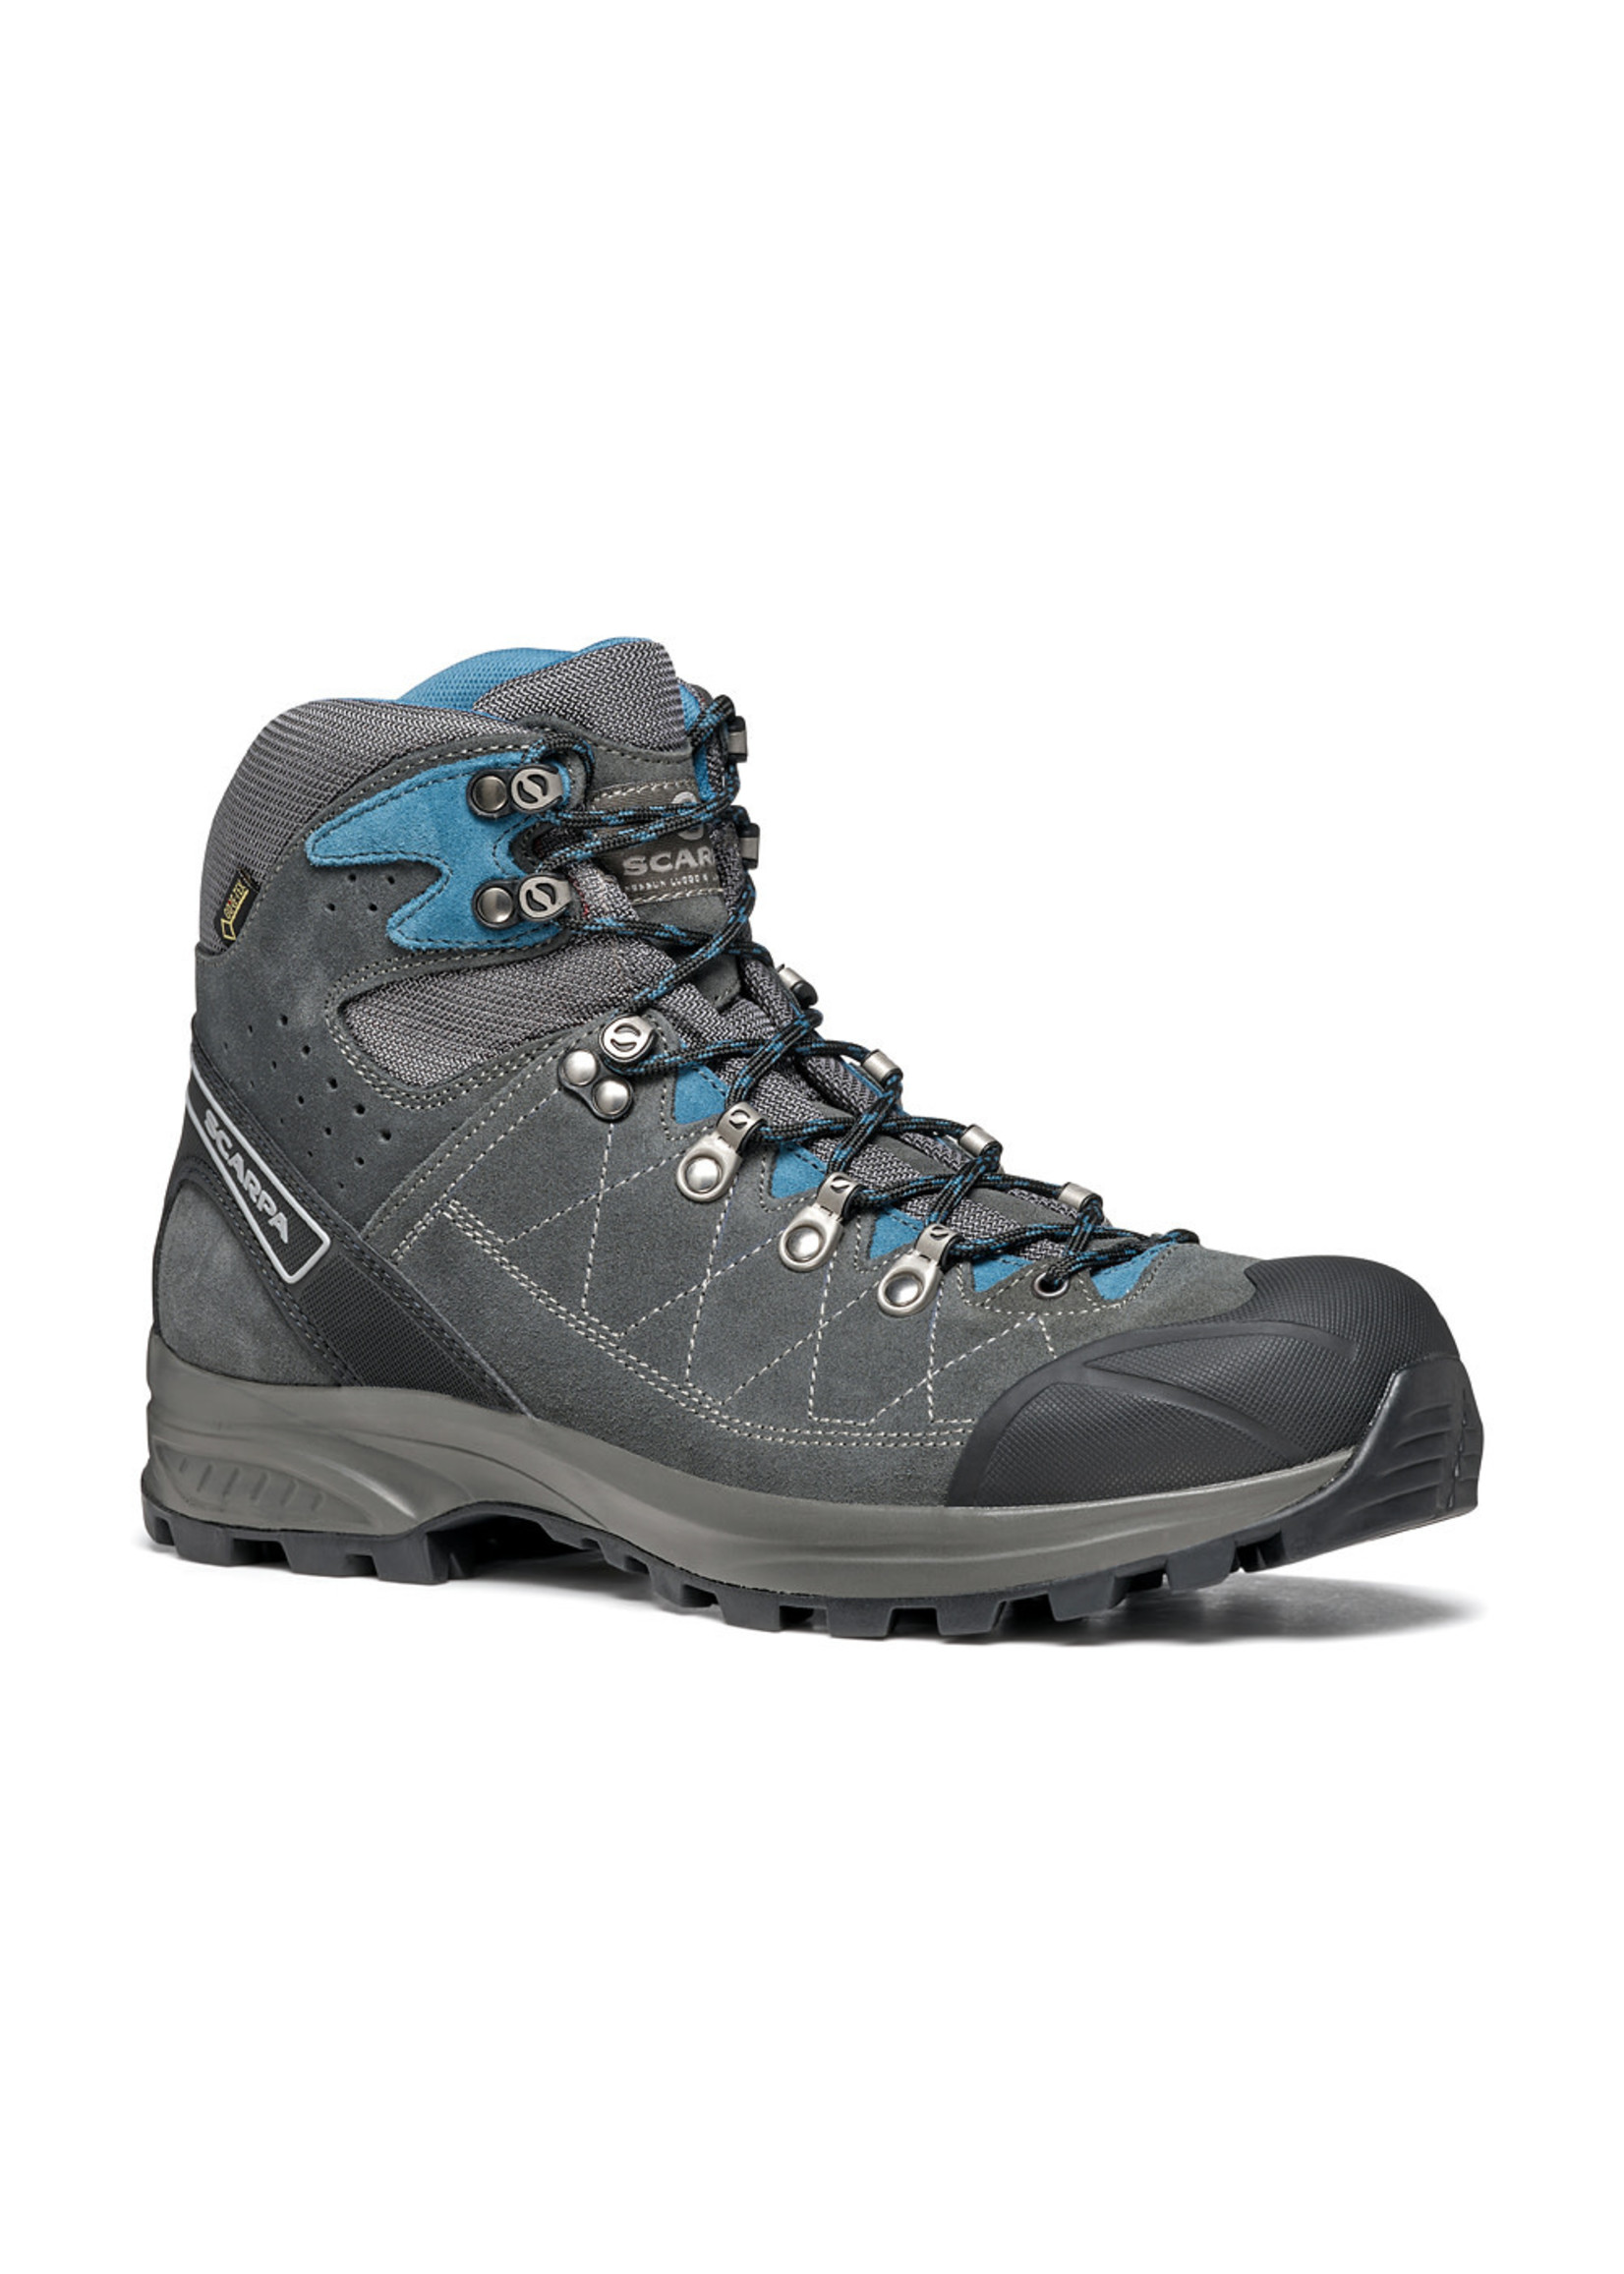 Scarpa Scarpa Kailash Trek GTX Hiking Boots - Men